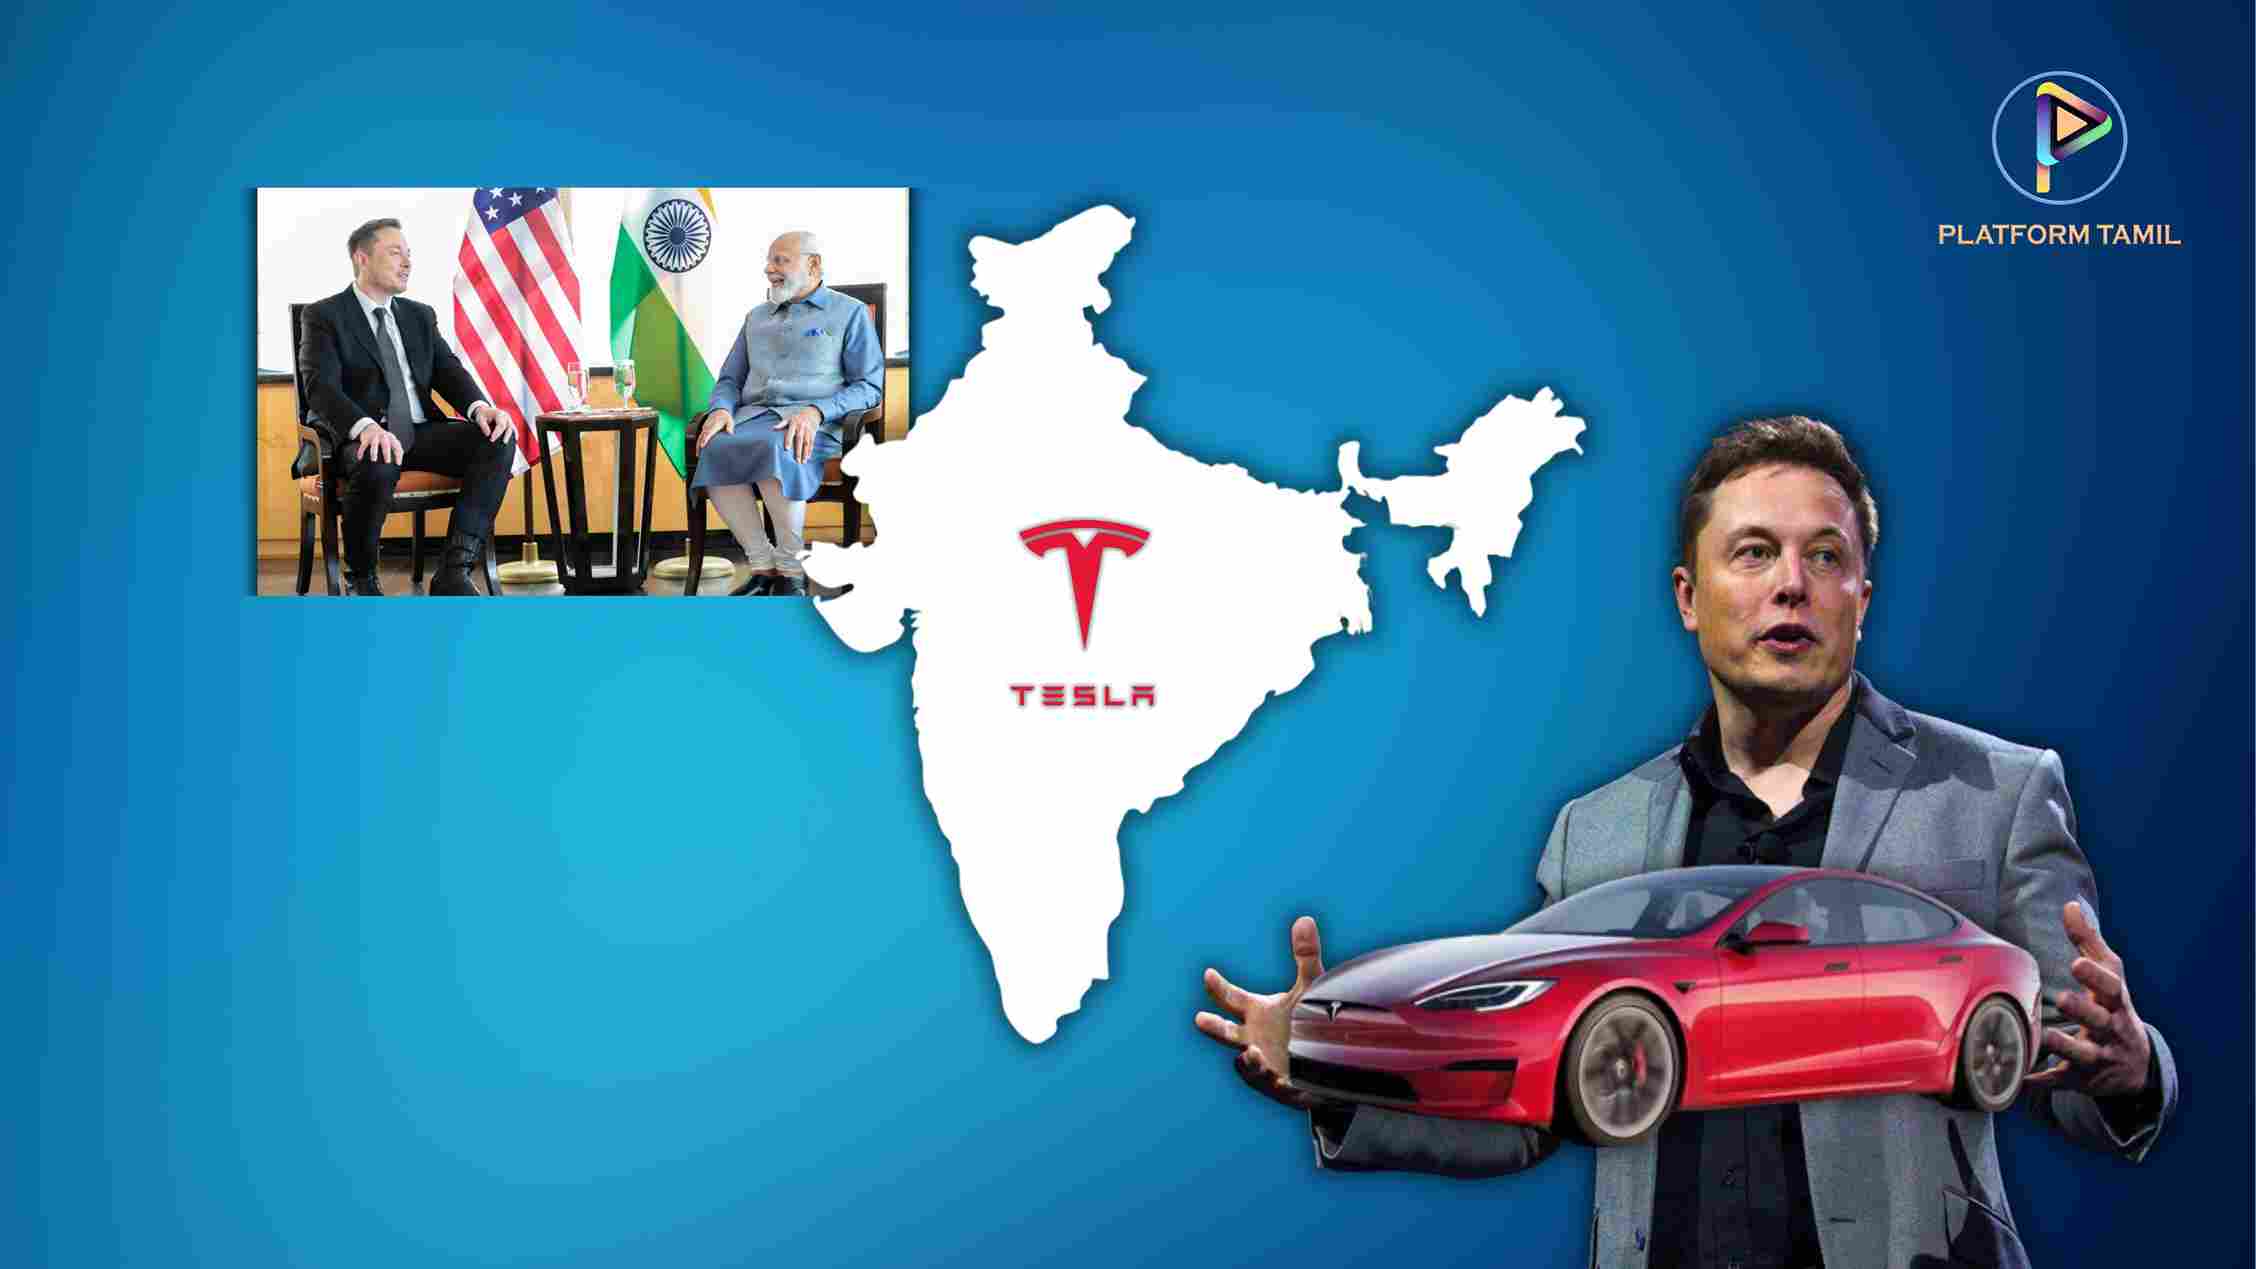 Tesla - Platform Tamil